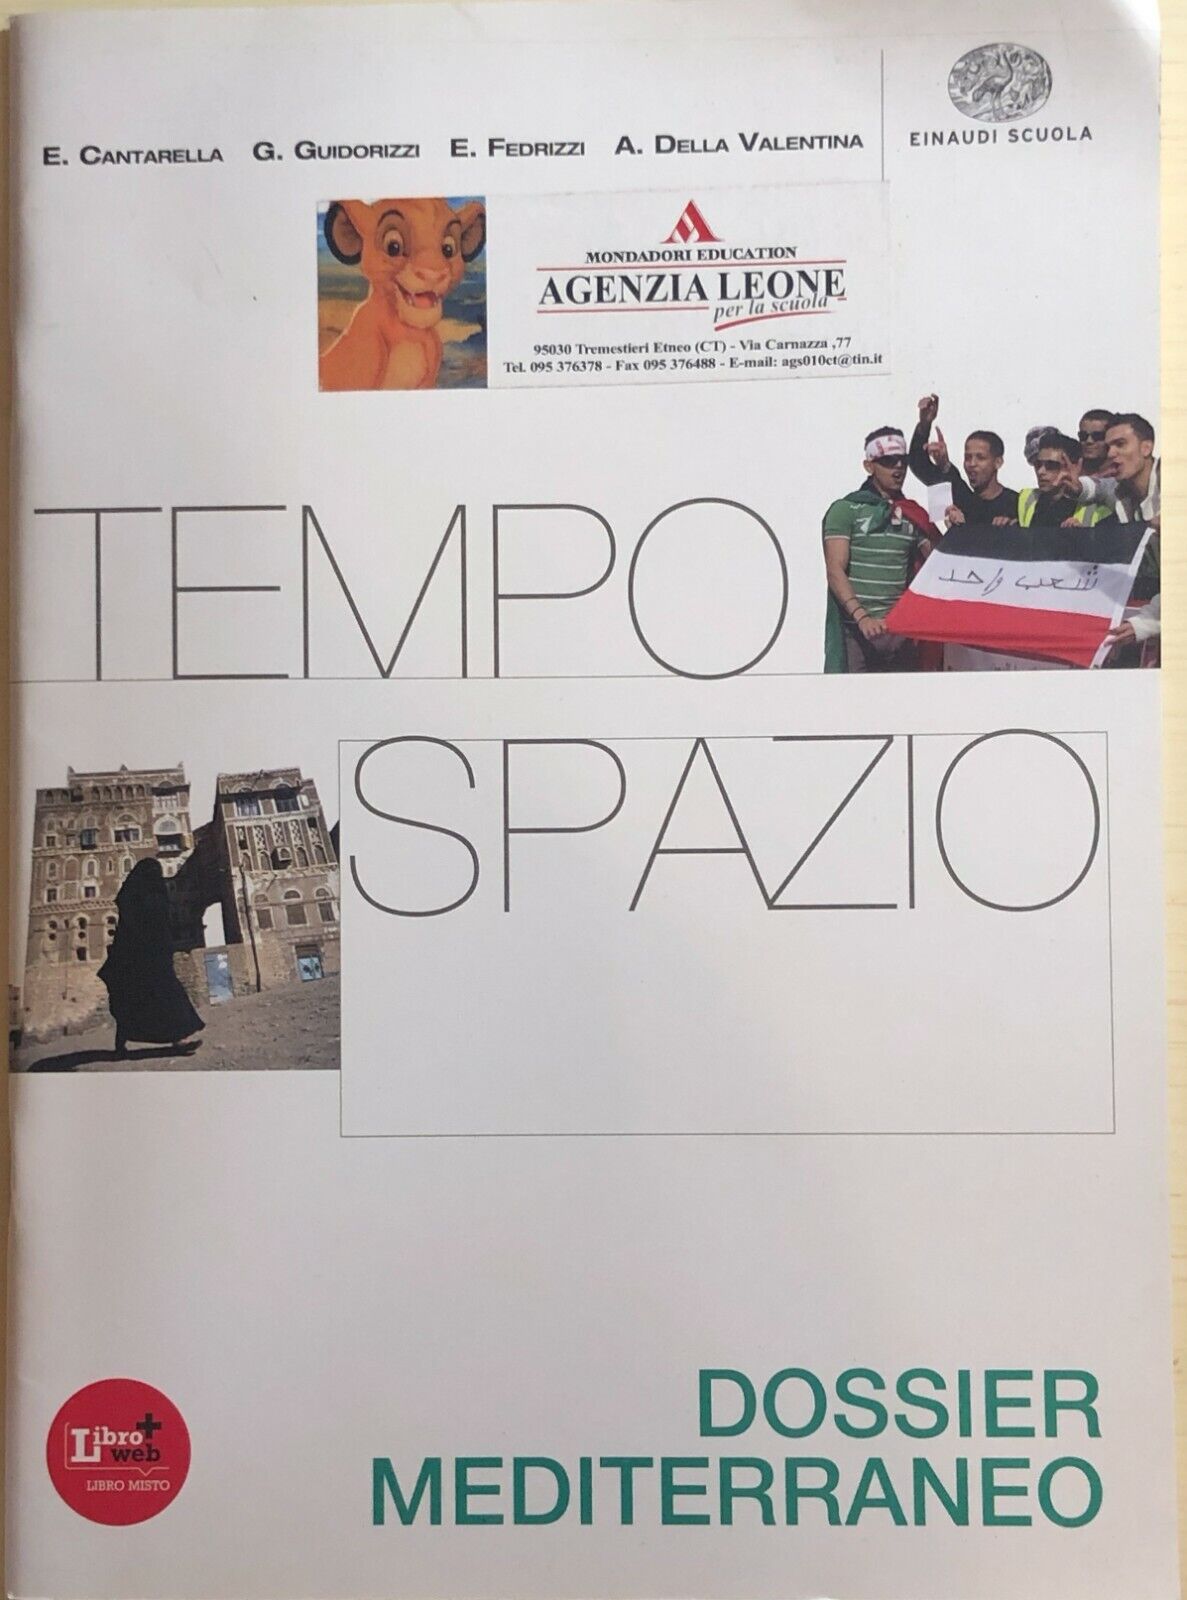 Tempo e spazio, Dossier Mediterraneo di Aa.vv., 2012, Einaudi Scuola